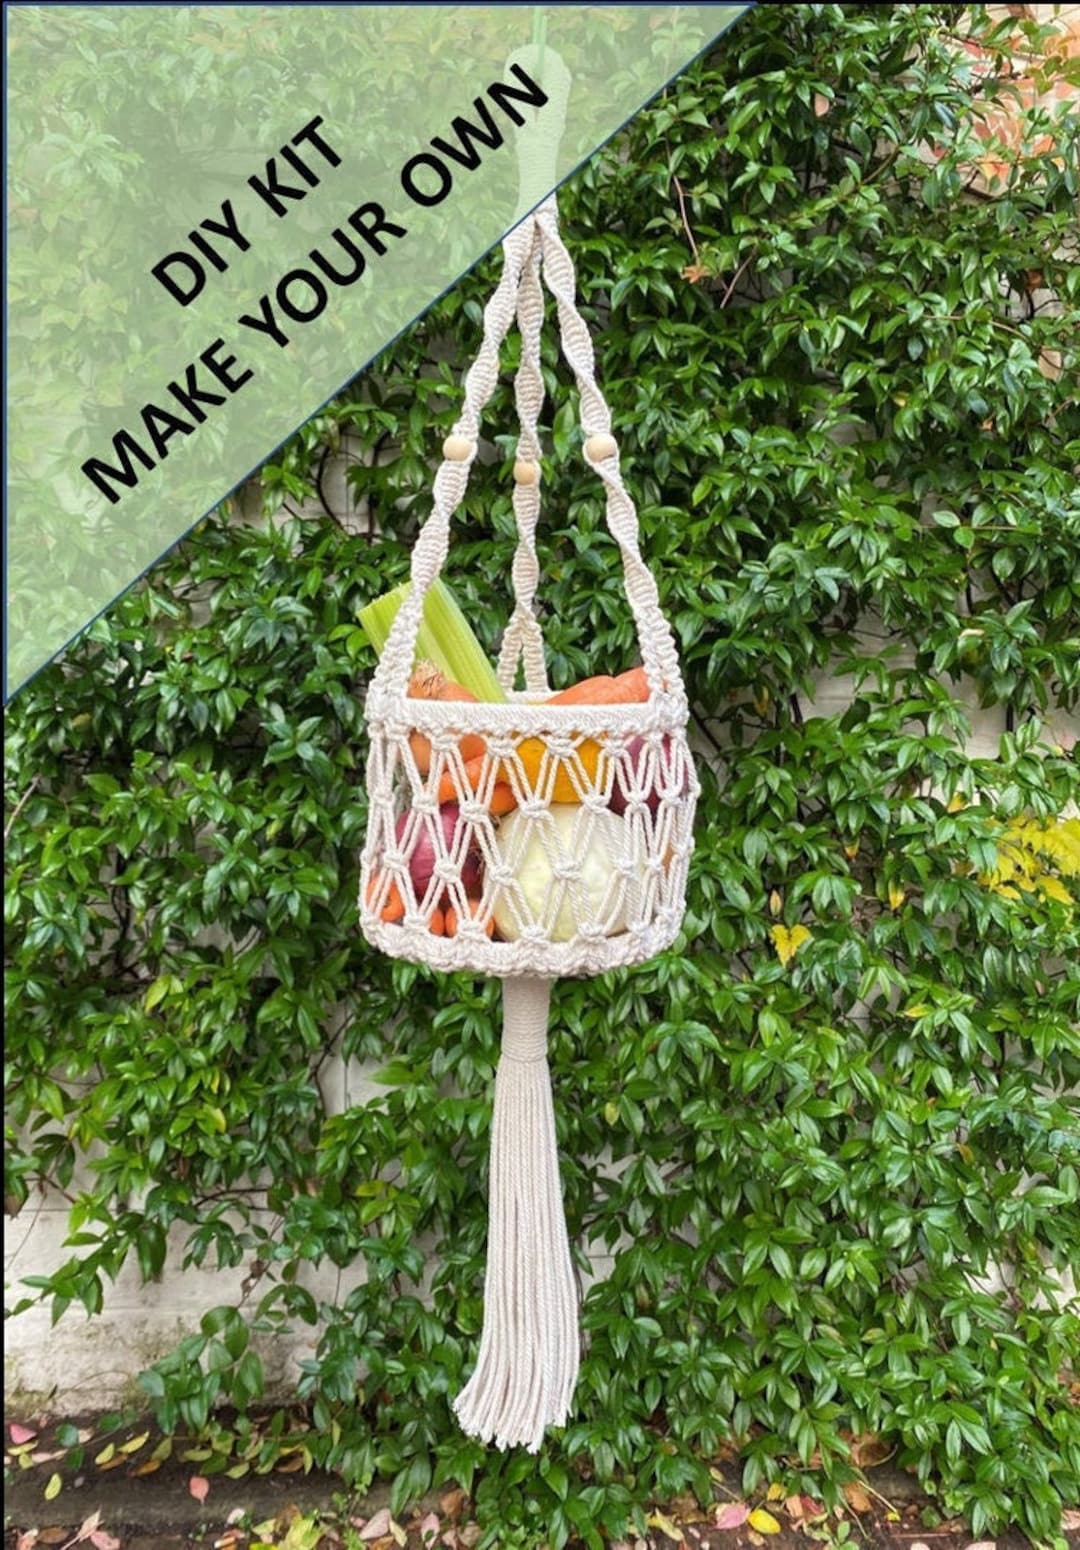 DIY Macrame Hanging Vegetable Basket Kit. Everything You Need